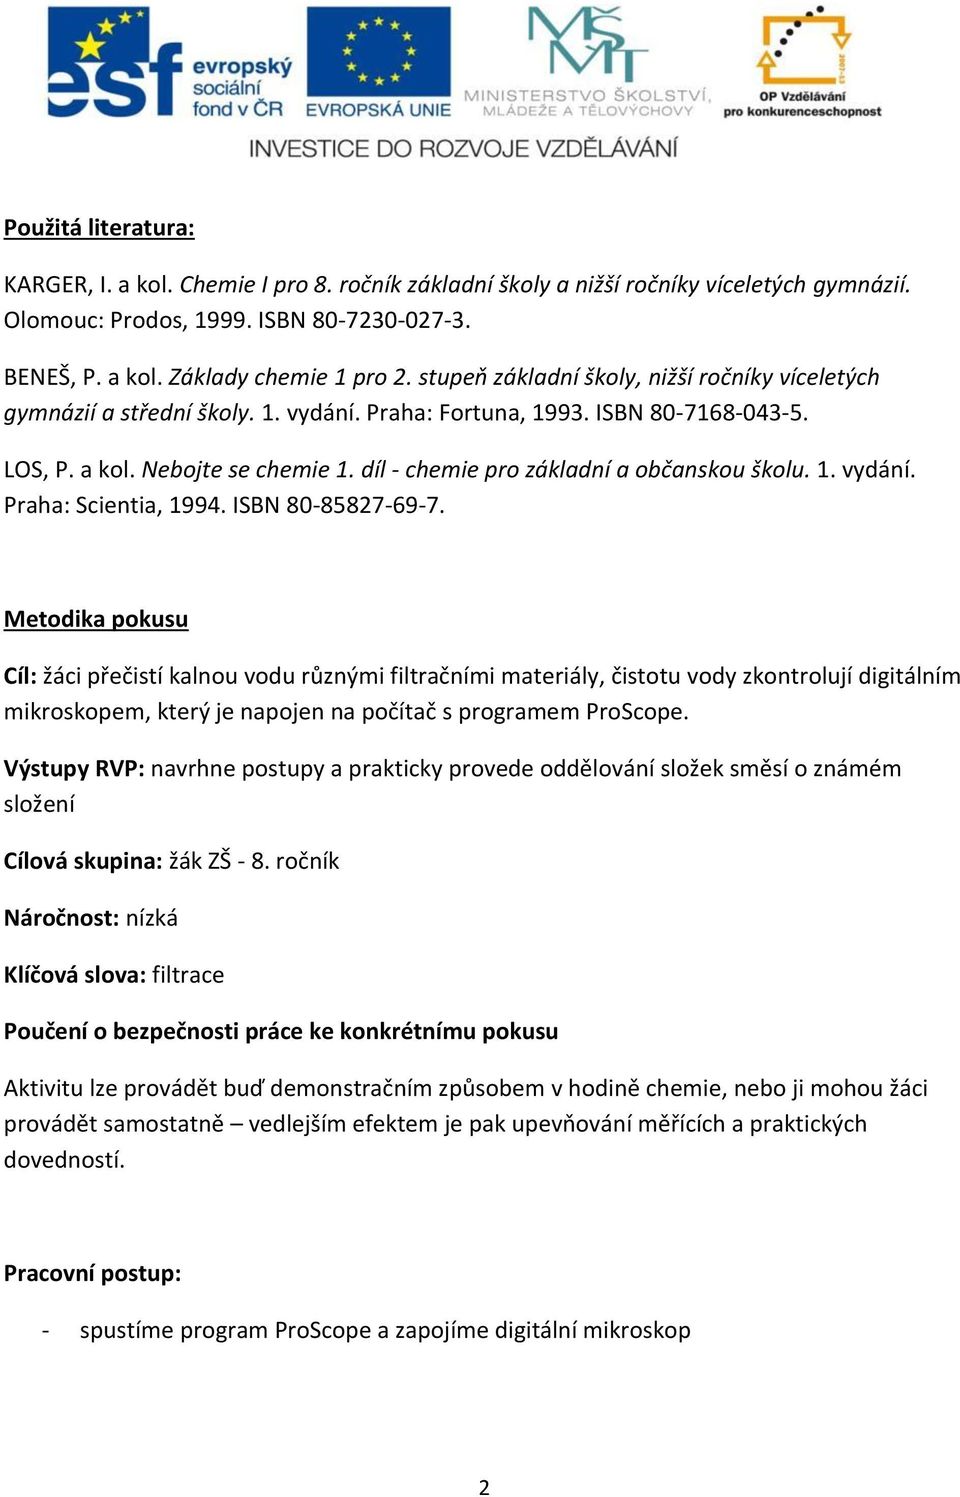 díl - chemie pro základní a občanskou školu. 1. vydání. Praha: Scientia, 1994. ISBN 80-85827-69-7.